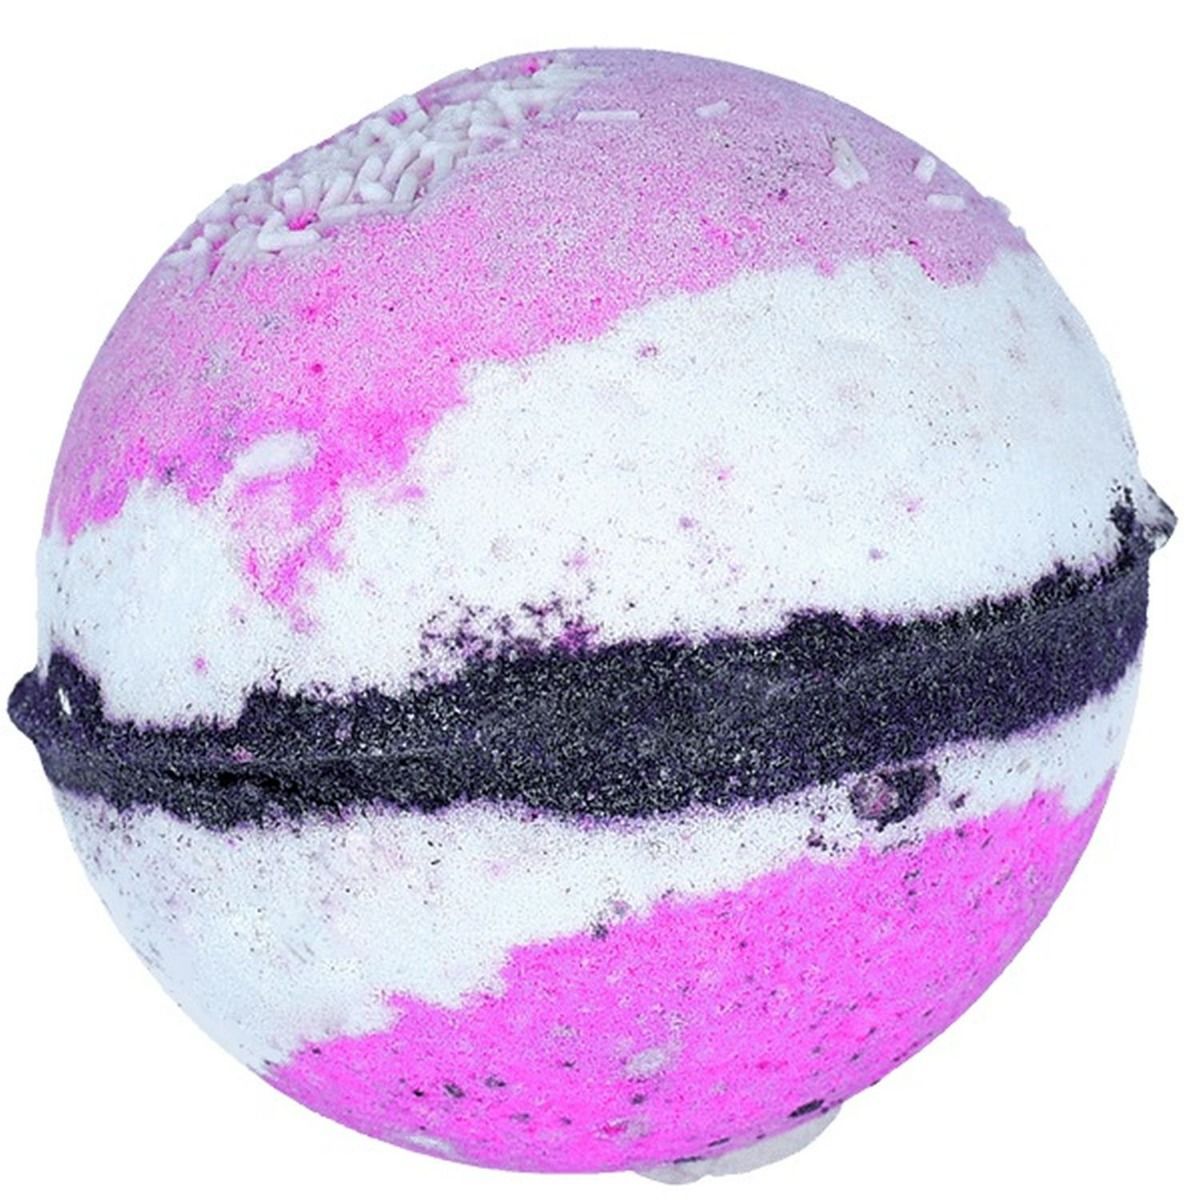 цена Bomb Cosmetics Watercolours Neopolitan Nights шарик для ванны, 1 шт.